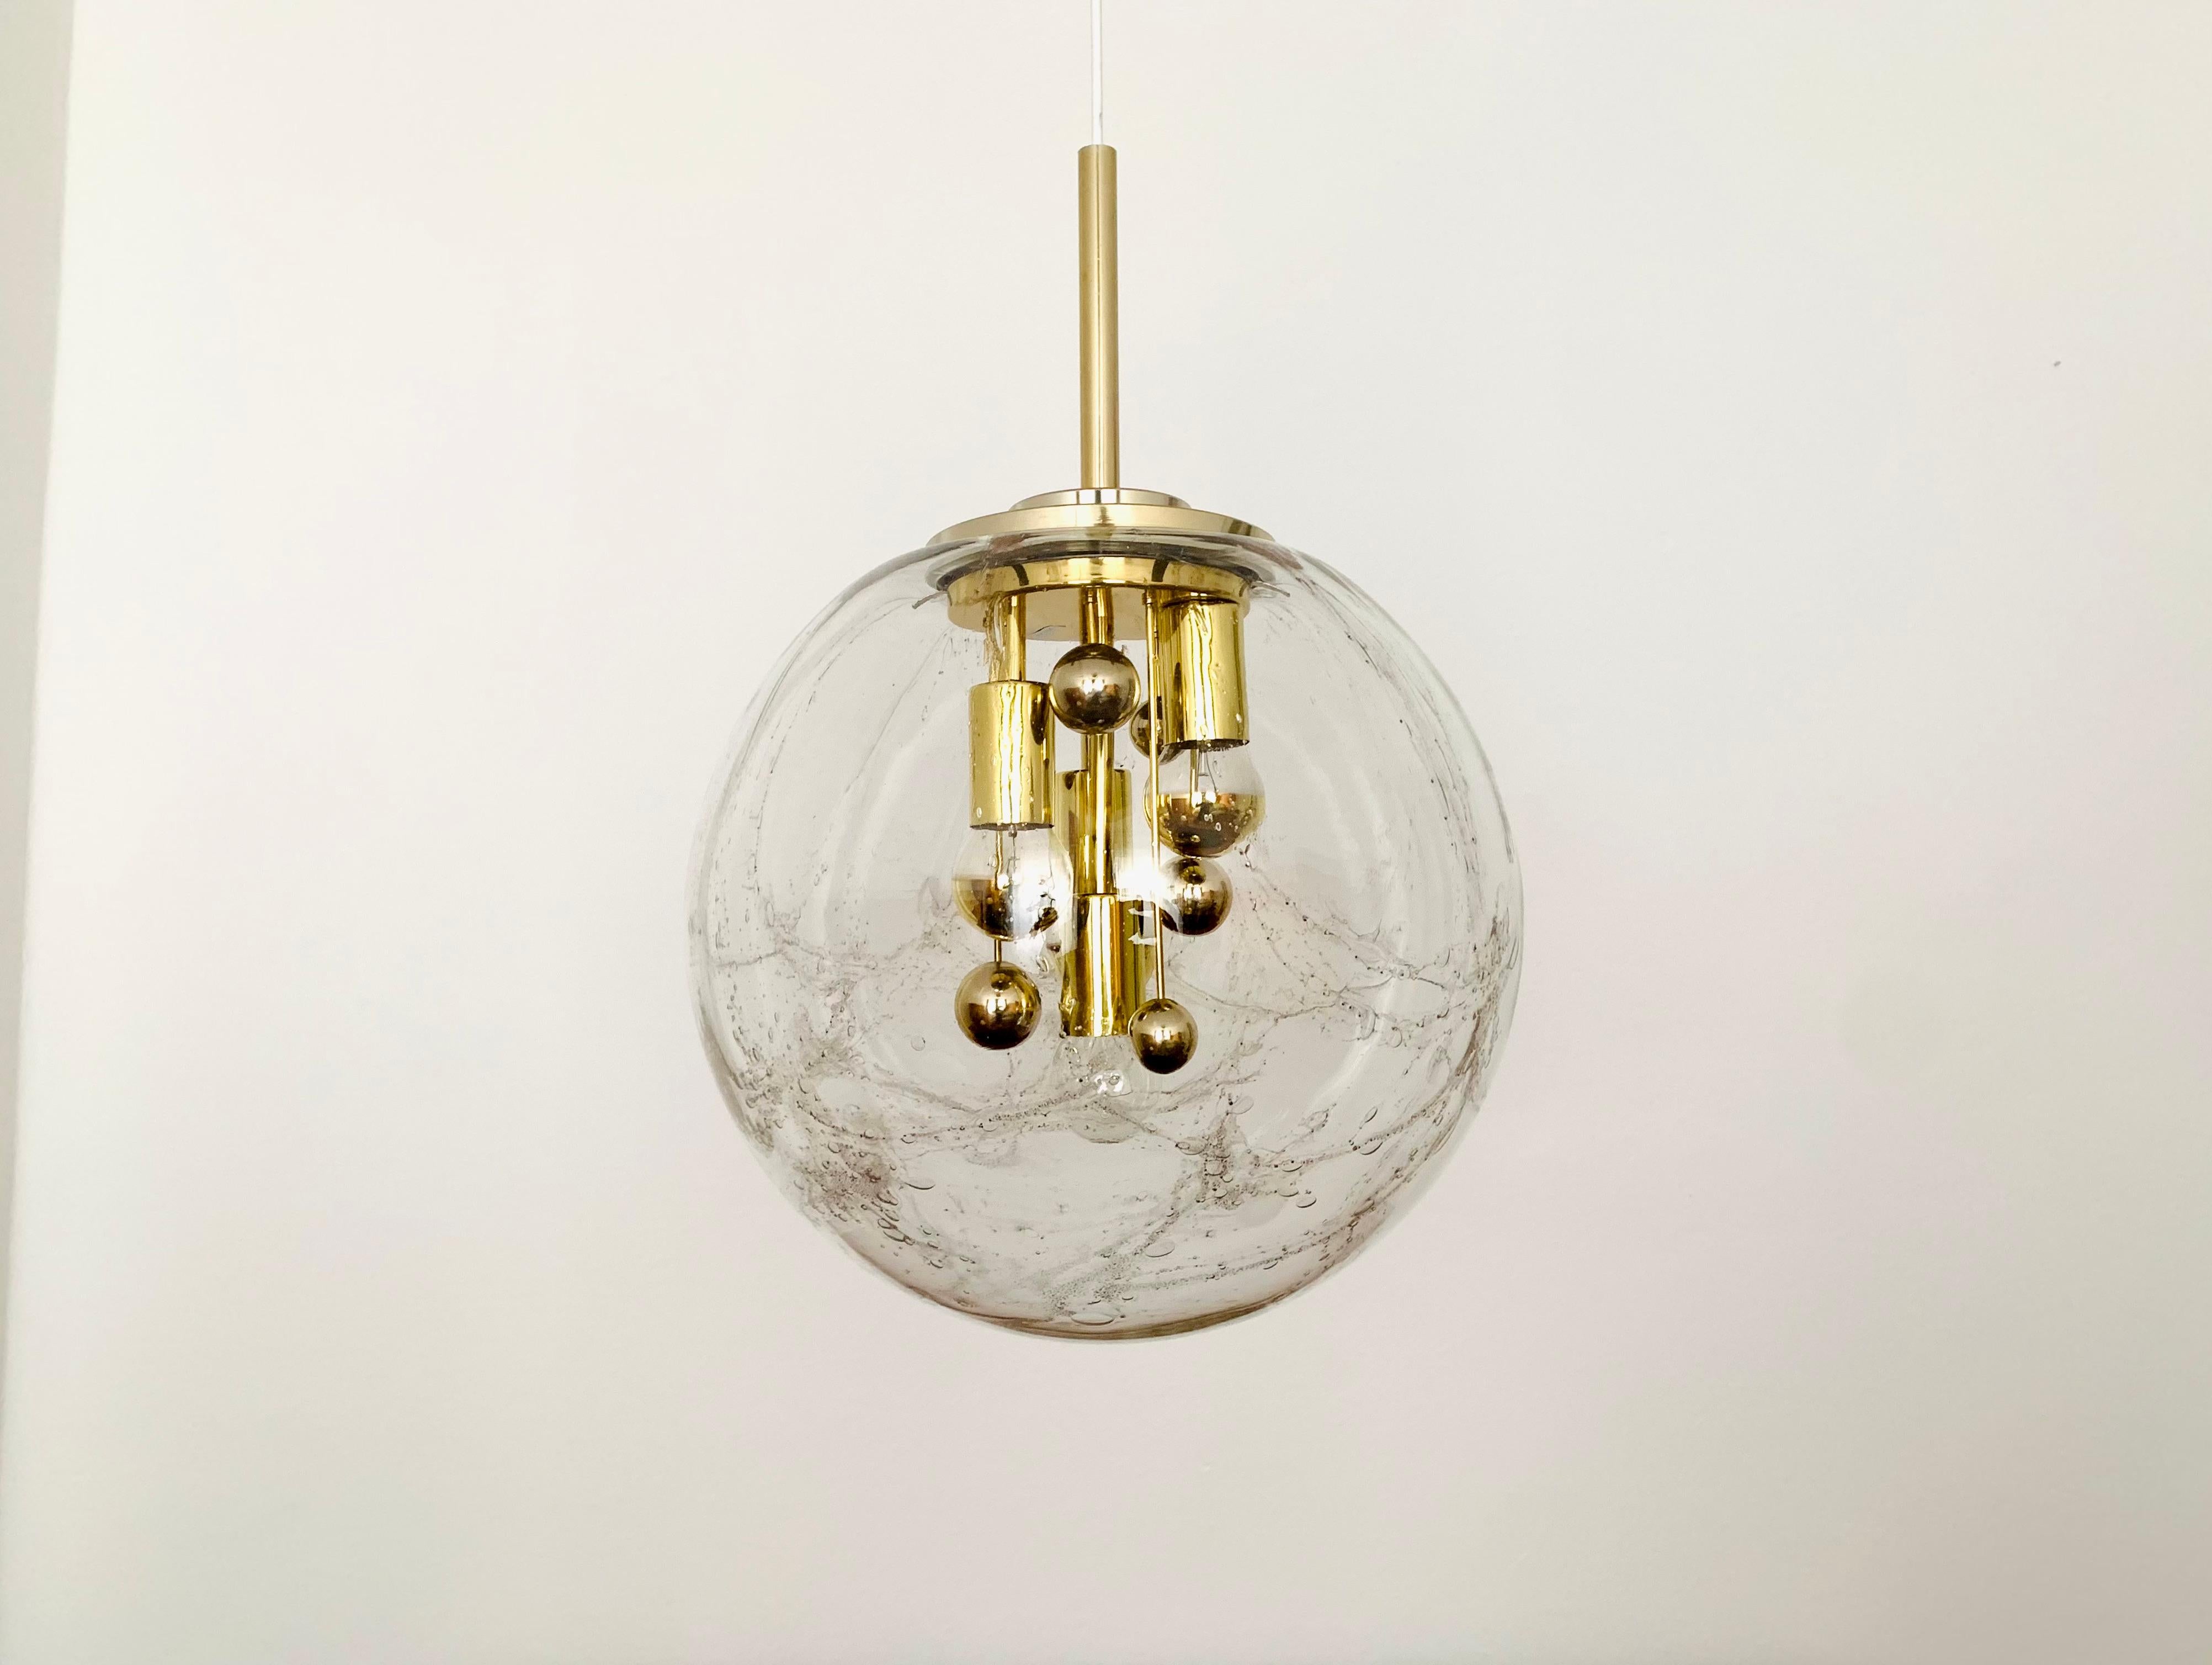 Sehr schöne und große goldene Big Ball Lampe von Doria aus den 1960er Jahren.
Sehr elegantes Hollywood Regency Design mit einem fantastisch glamourösen Look.
Die Struktur im Glas erzeugt ein sehr funkelndes Licht.

Hersteller: